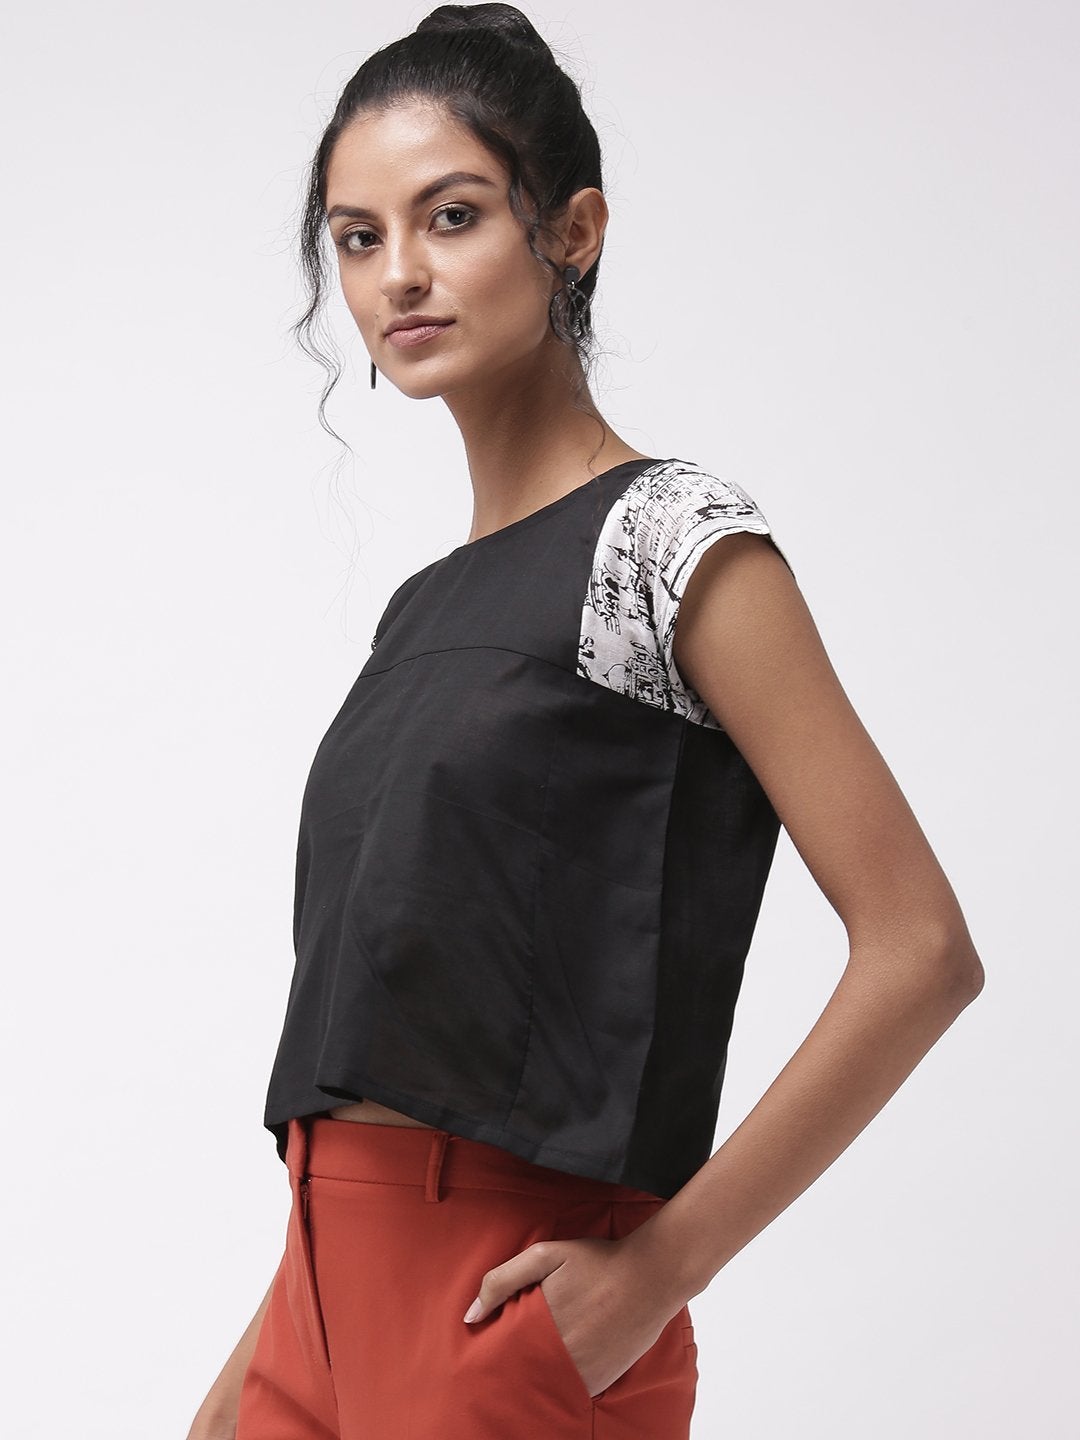 Women's Black Top With Printed Sleeve - InWeave